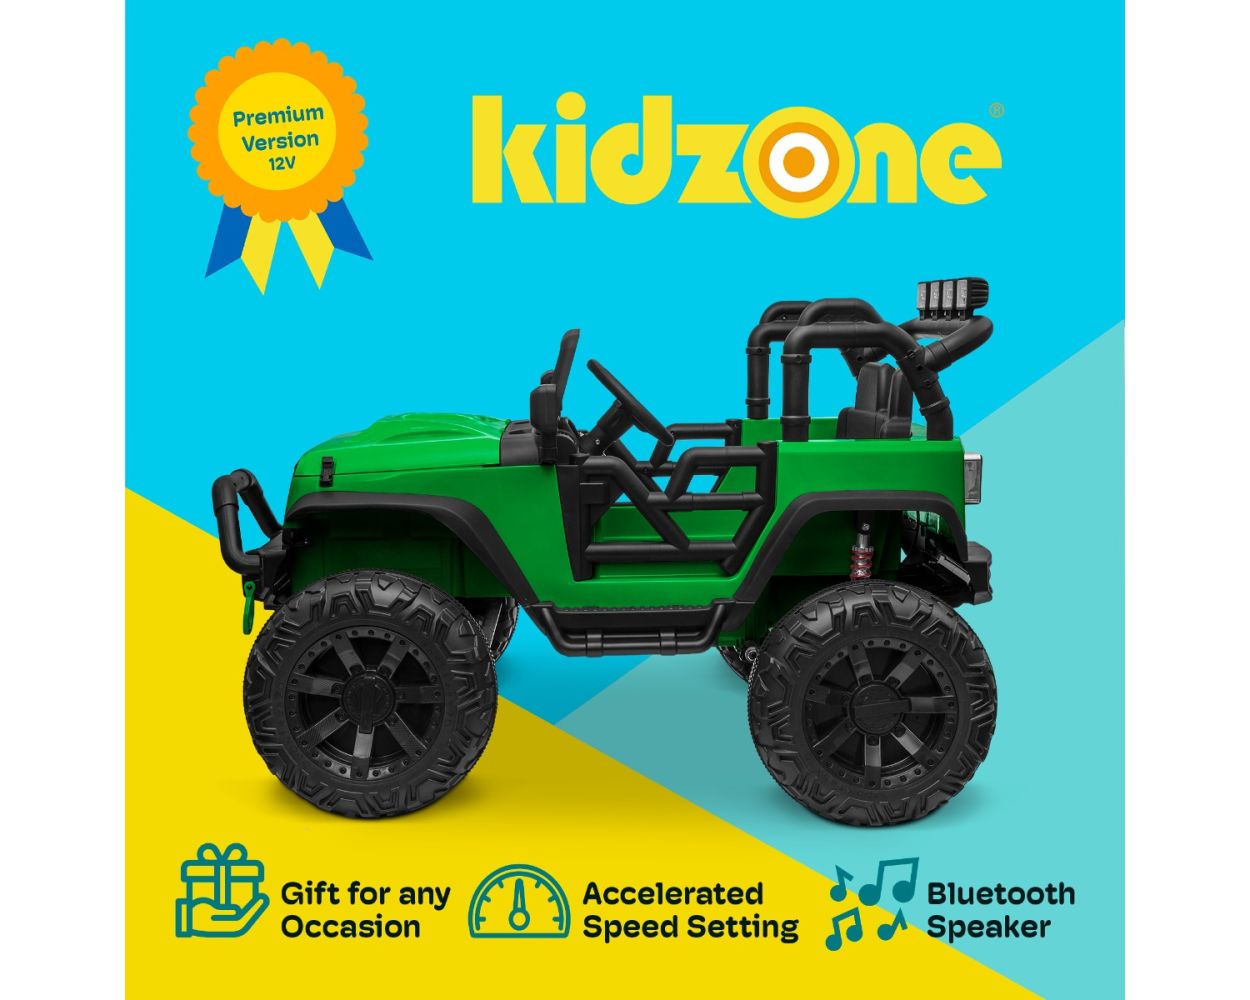 Toy-Zone - Online Shop für günstige Elektro Kinderfahrzeuge - RC Modelle &  Spielzeug aller Art - RC Auto Buggy Extreme 2,4 GHZ 4WD RTR 1:10 40 km/h  Lipo